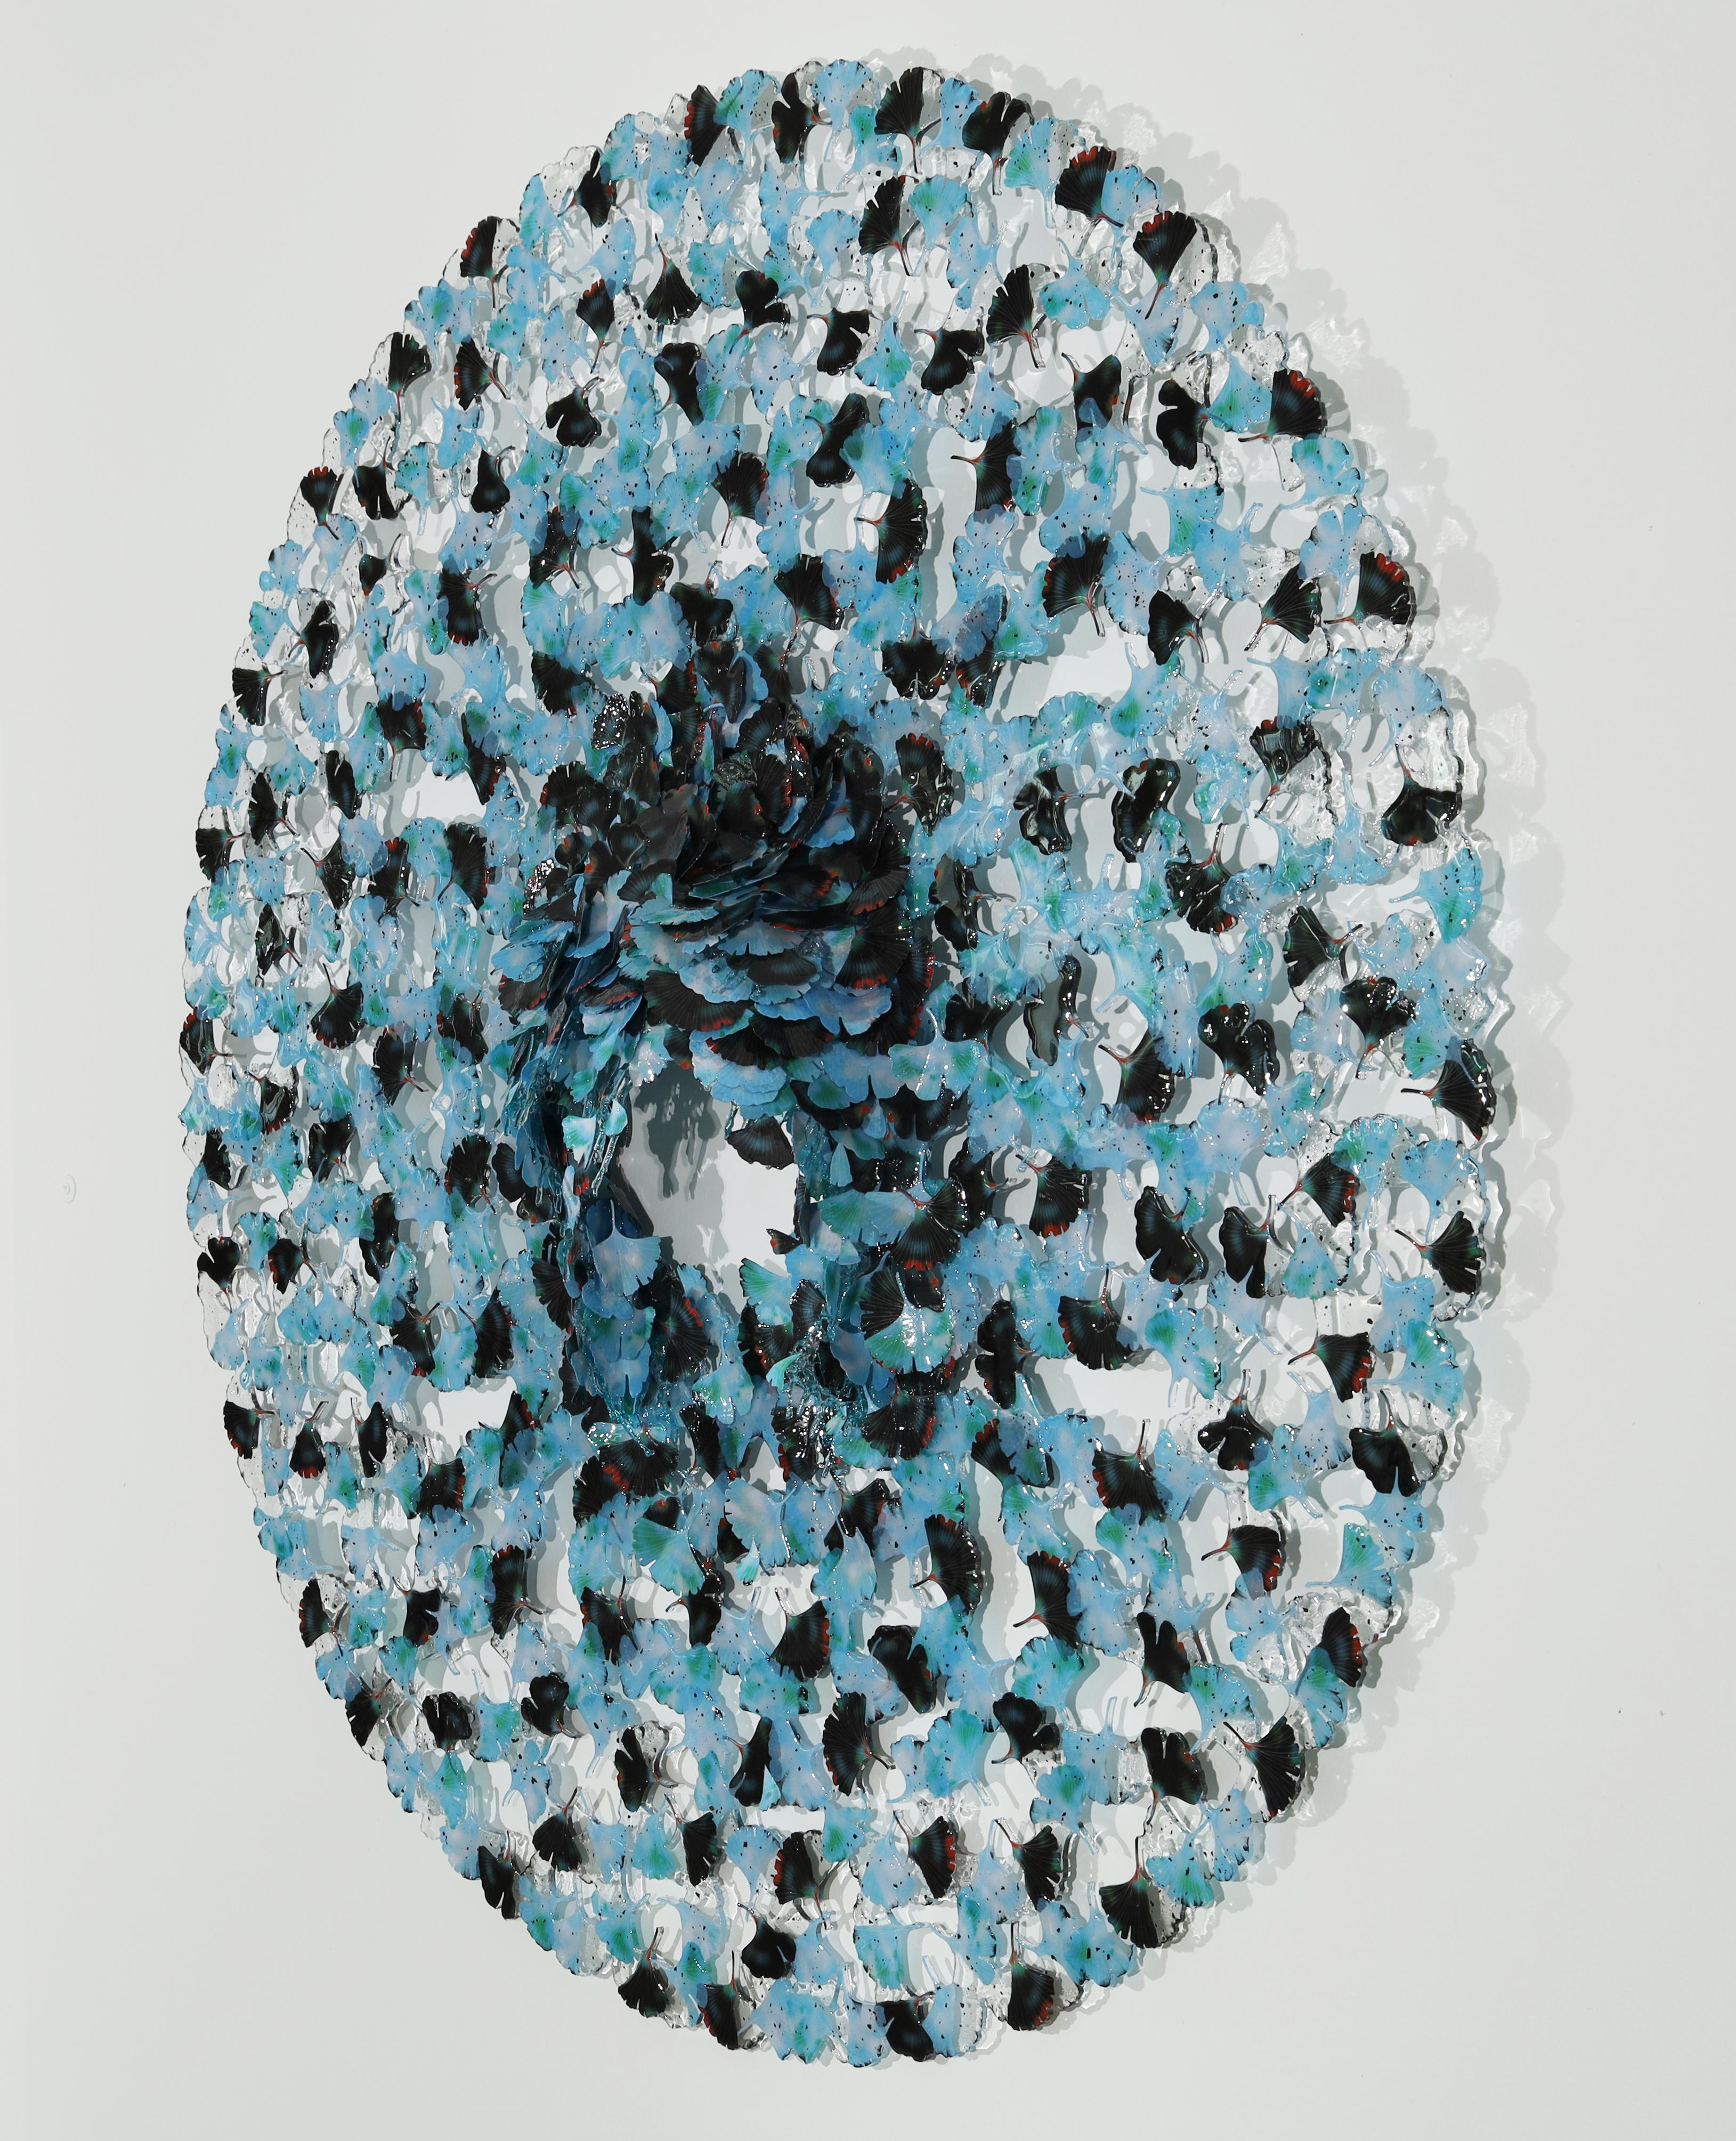 Cravate de rêve, bulle bleue Ginkgo  - Sculpture de Annalù